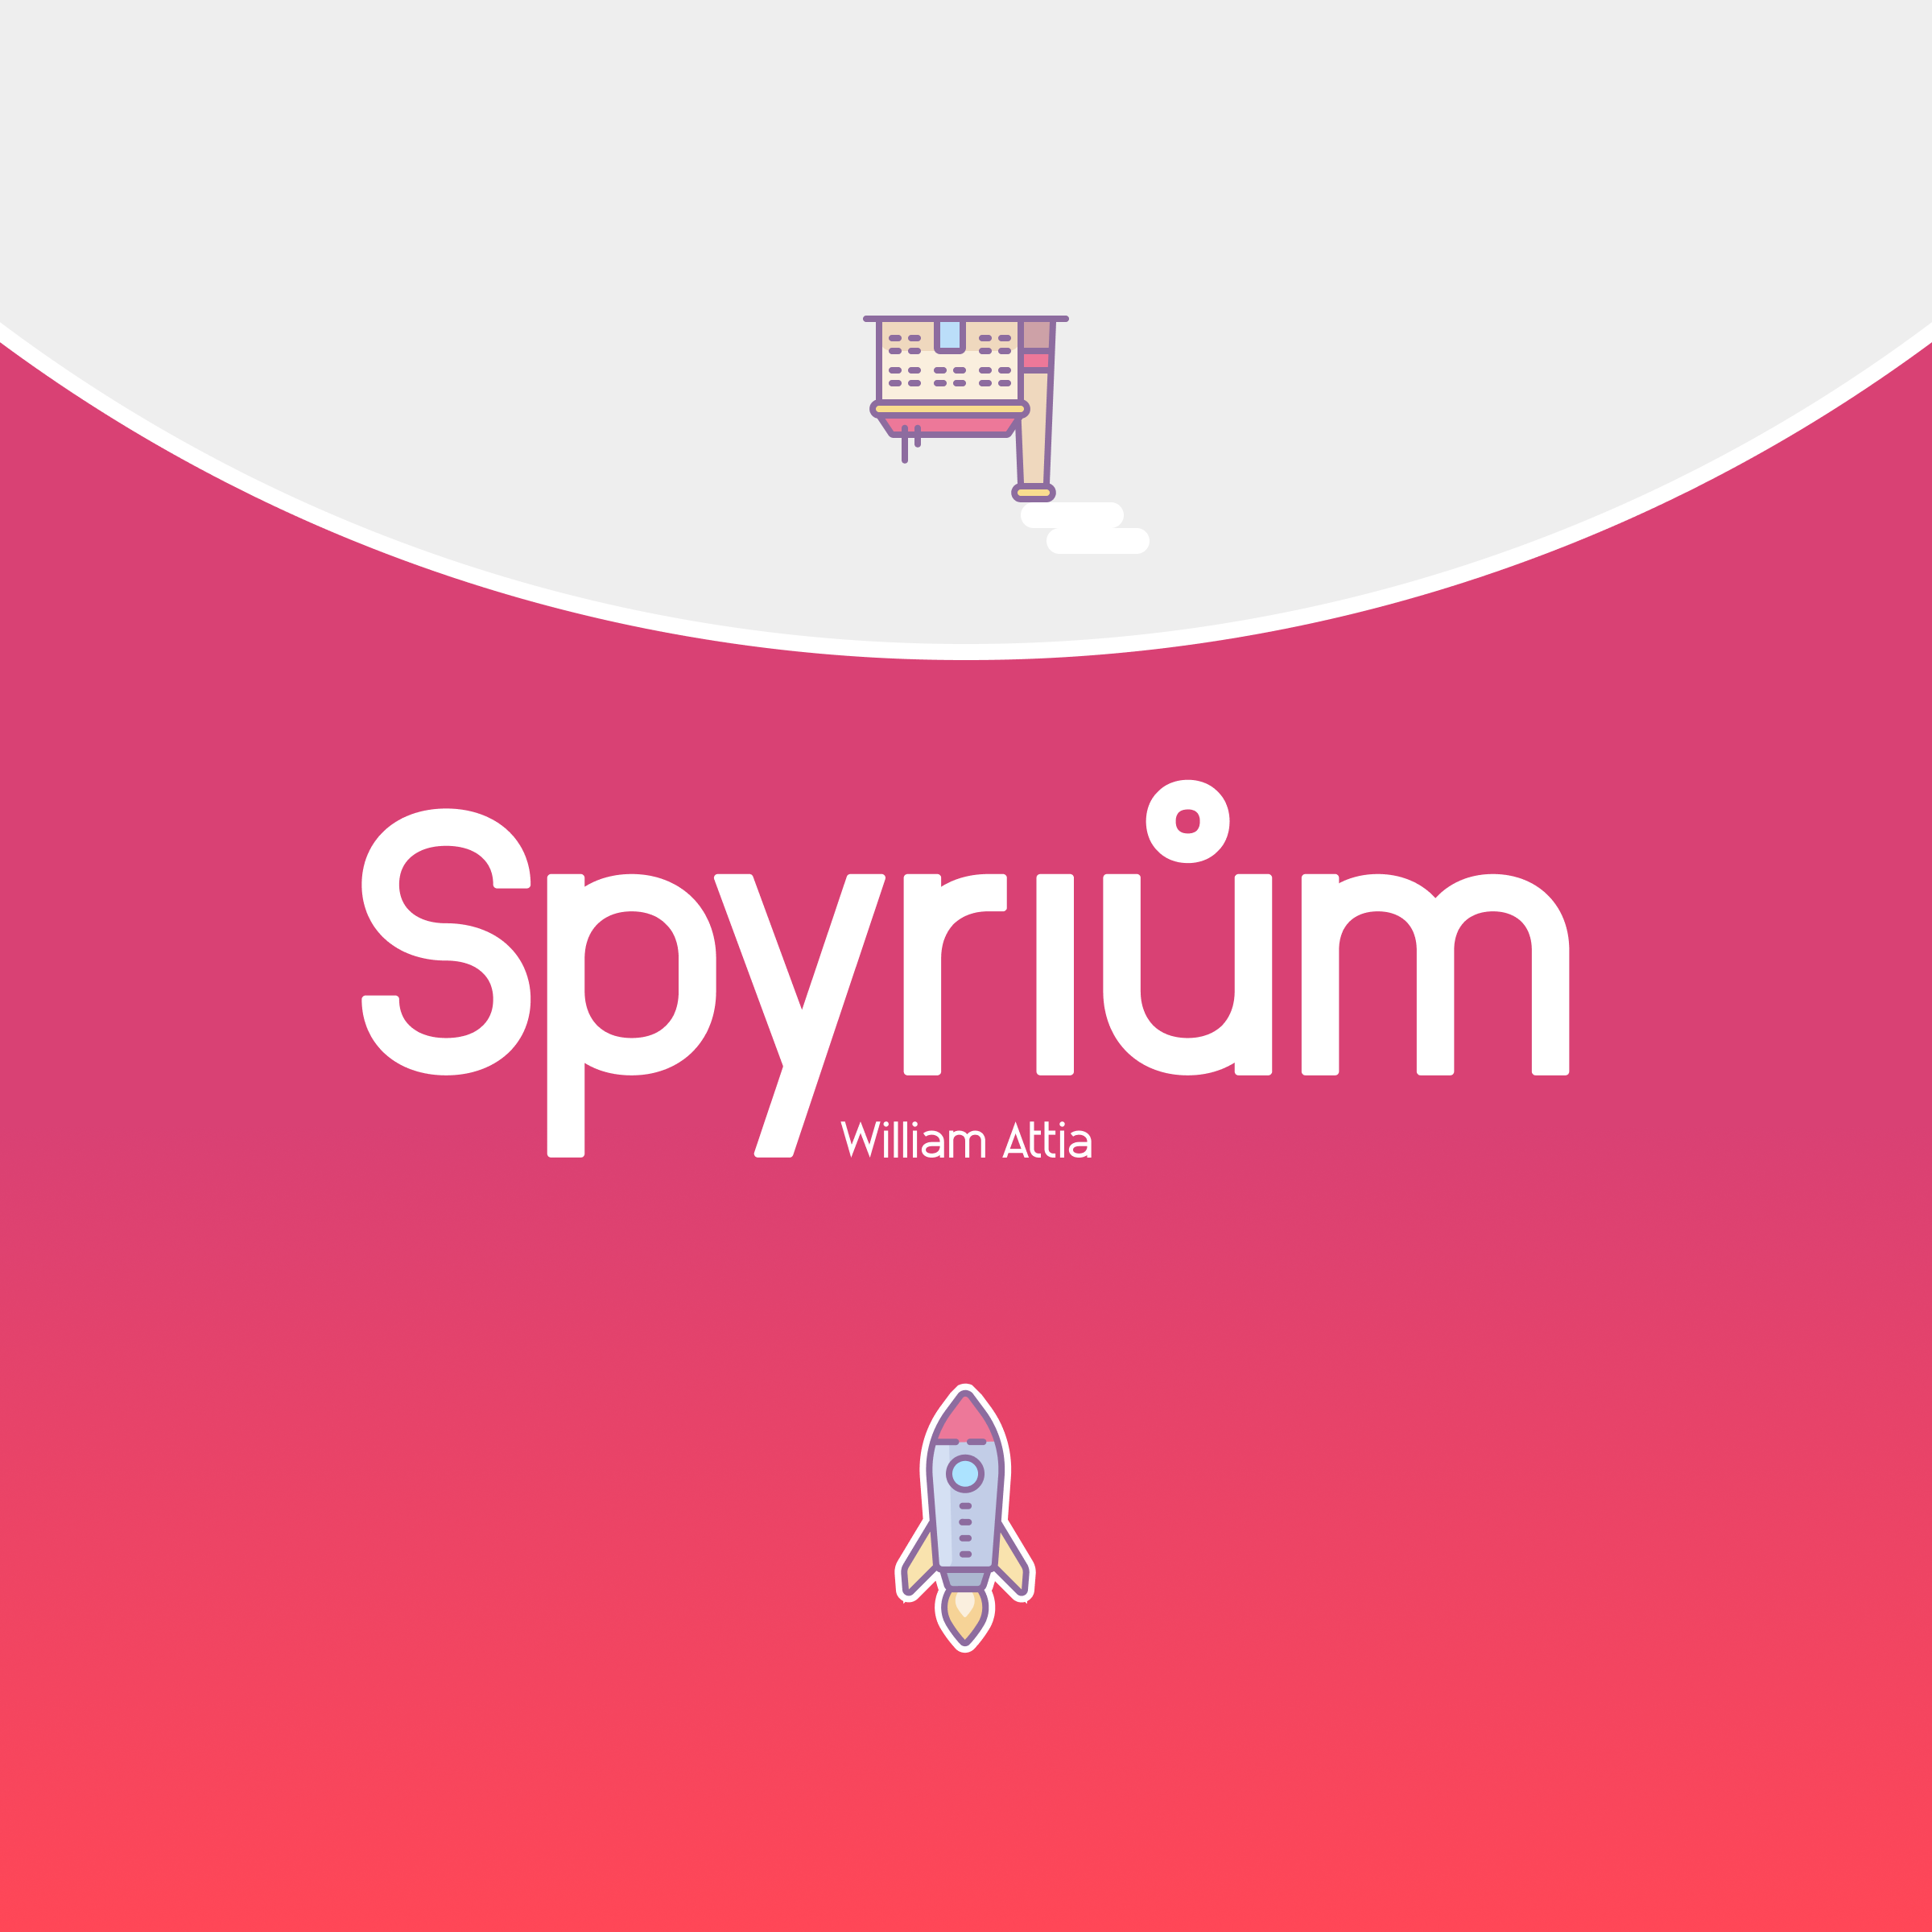 Personal re-design of William Attia's worker placement game Spyrium